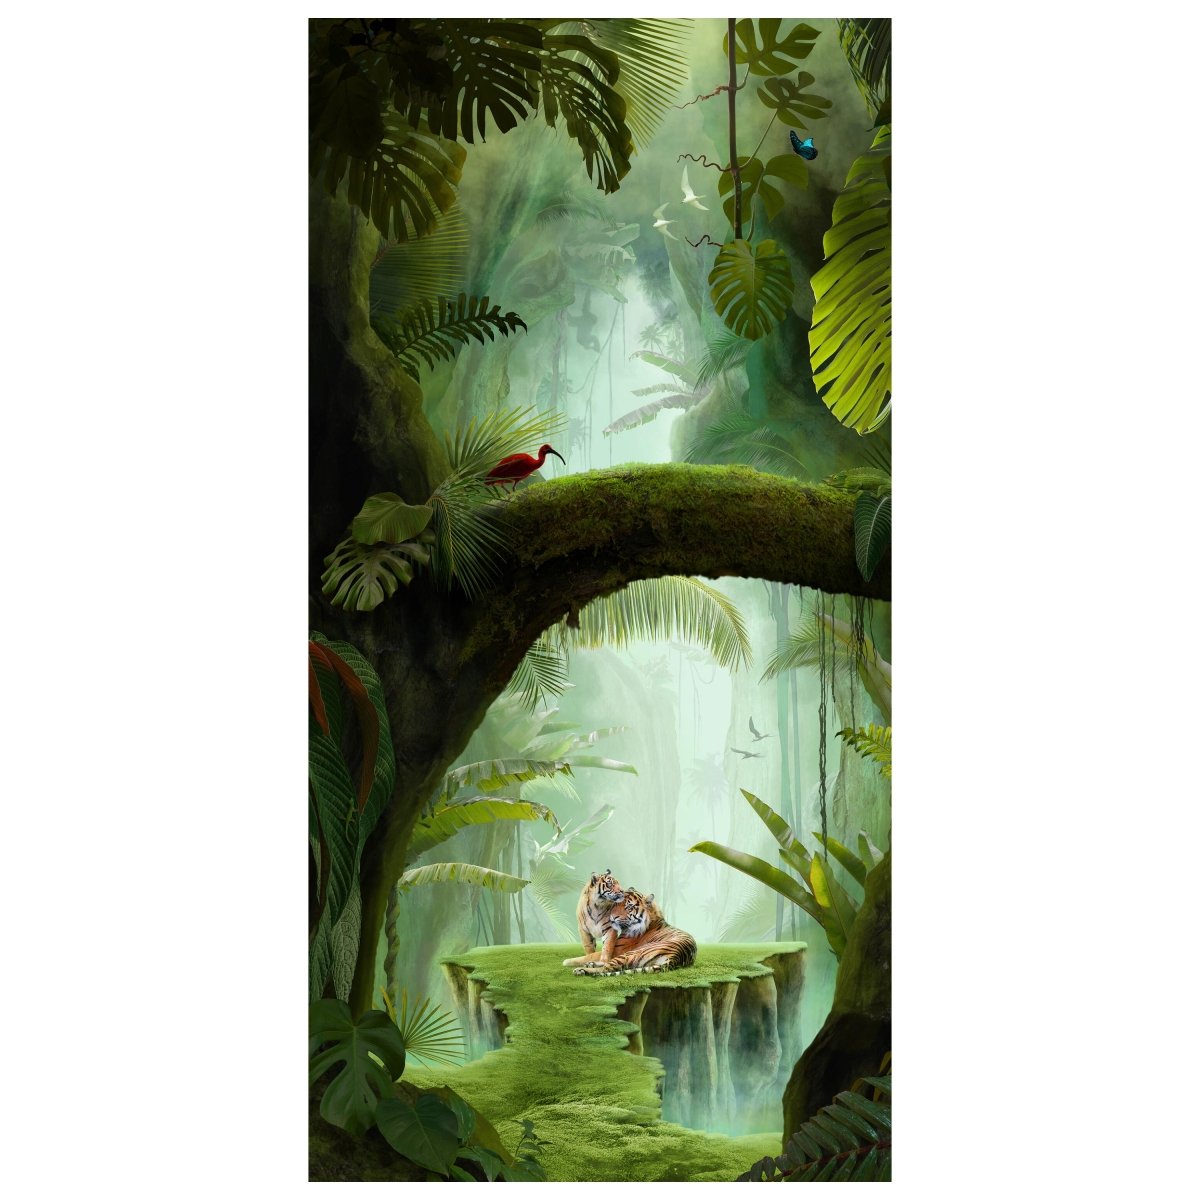 Türtapete Dschungel & Tiere, Fantasy, Urwald, Moos M1350 - Bild 2